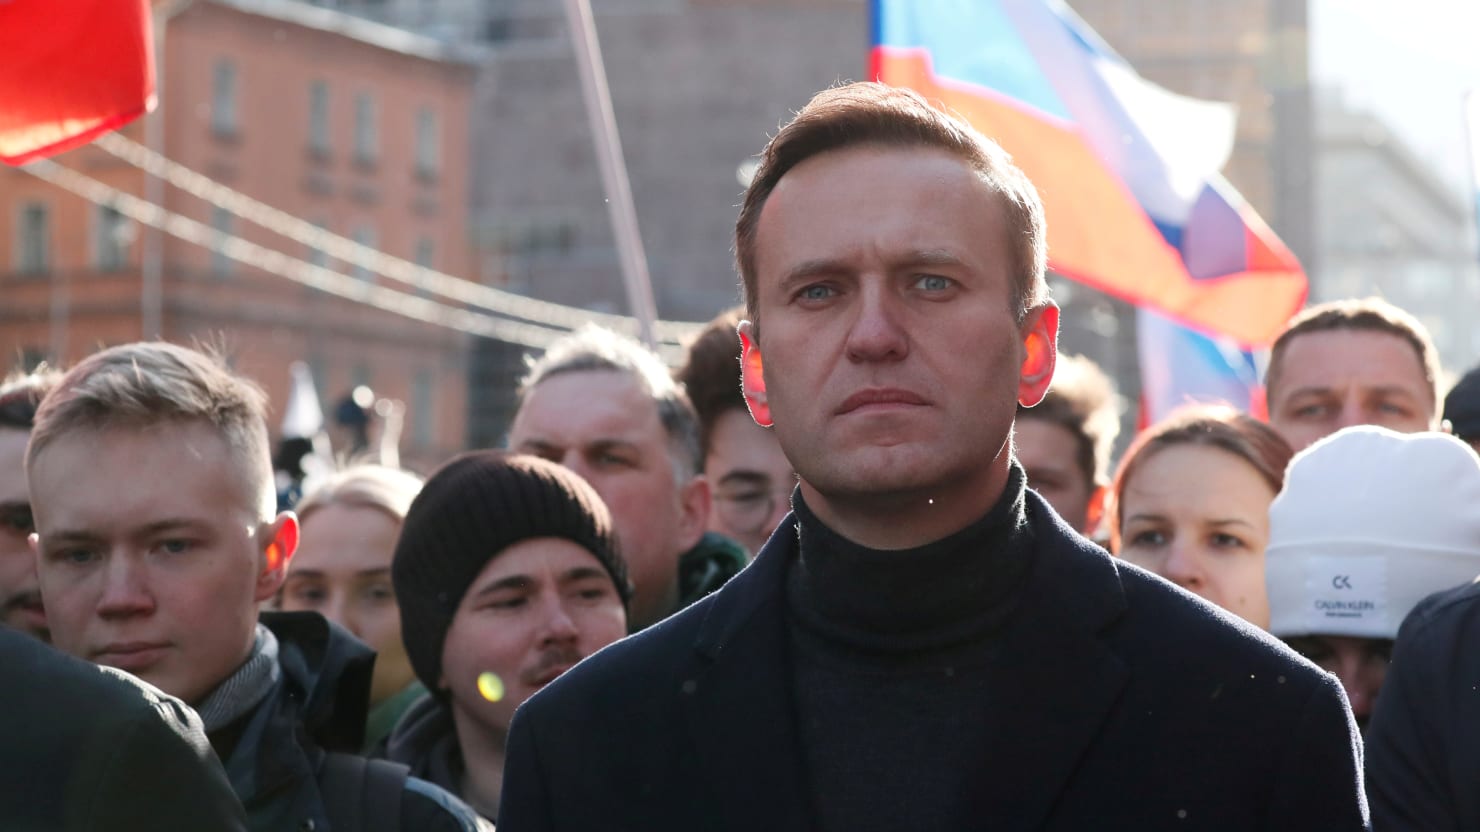 Yevgeny Prigozhin Threatens to Destroy Navalny in the Courts if He